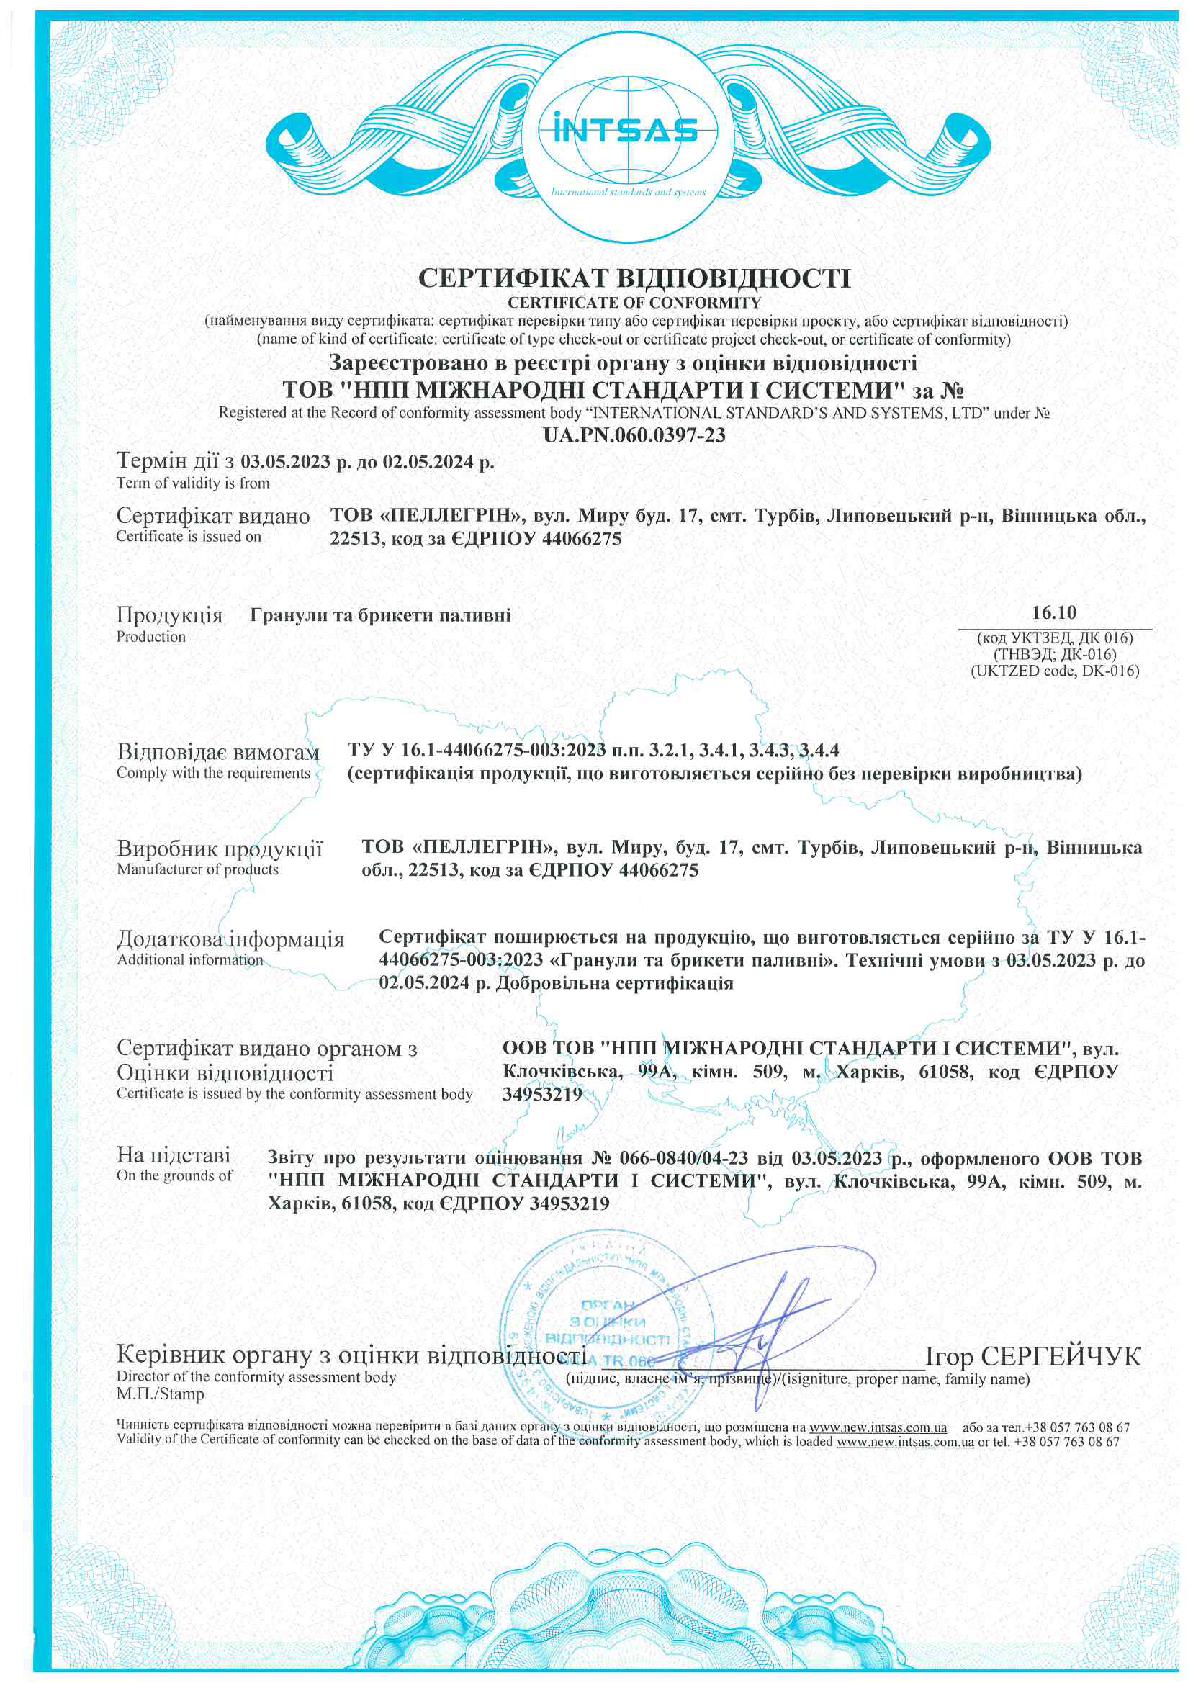 Сертифікат відповідності Гранули та брикети паливні